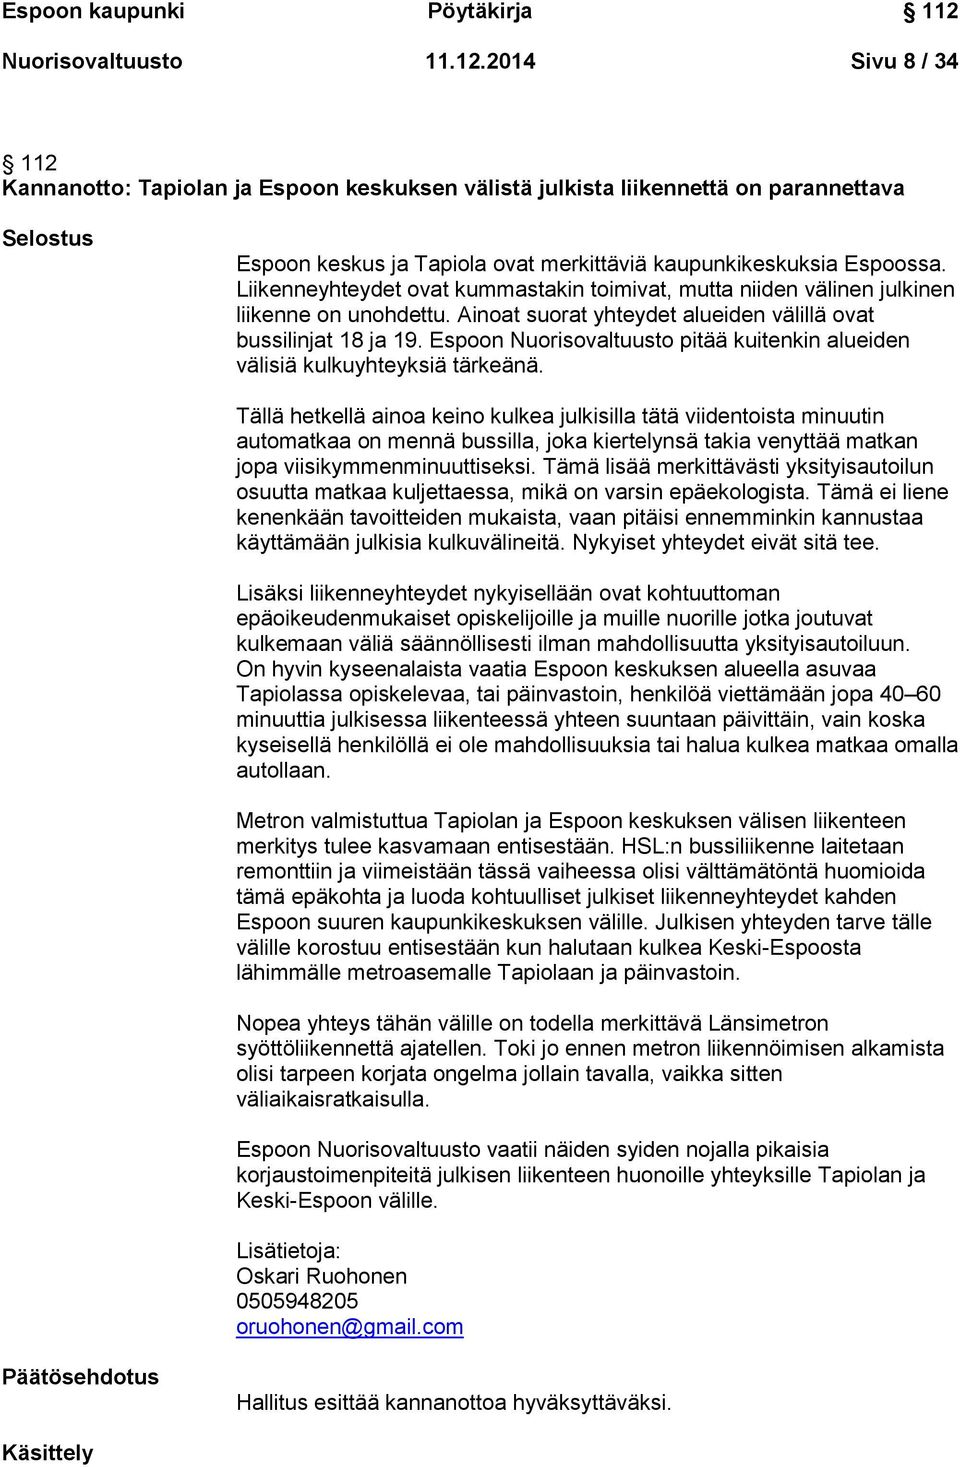 2014 Sivu 8 / 34 112 Kannanotto: Tapiolan ja Espoon keskuksen välistä julkista liikennettä on parannettava Selostus Espoon keskus ja Tapiola ovat merkittäviä kaupunkikeskuksia Espoossa.